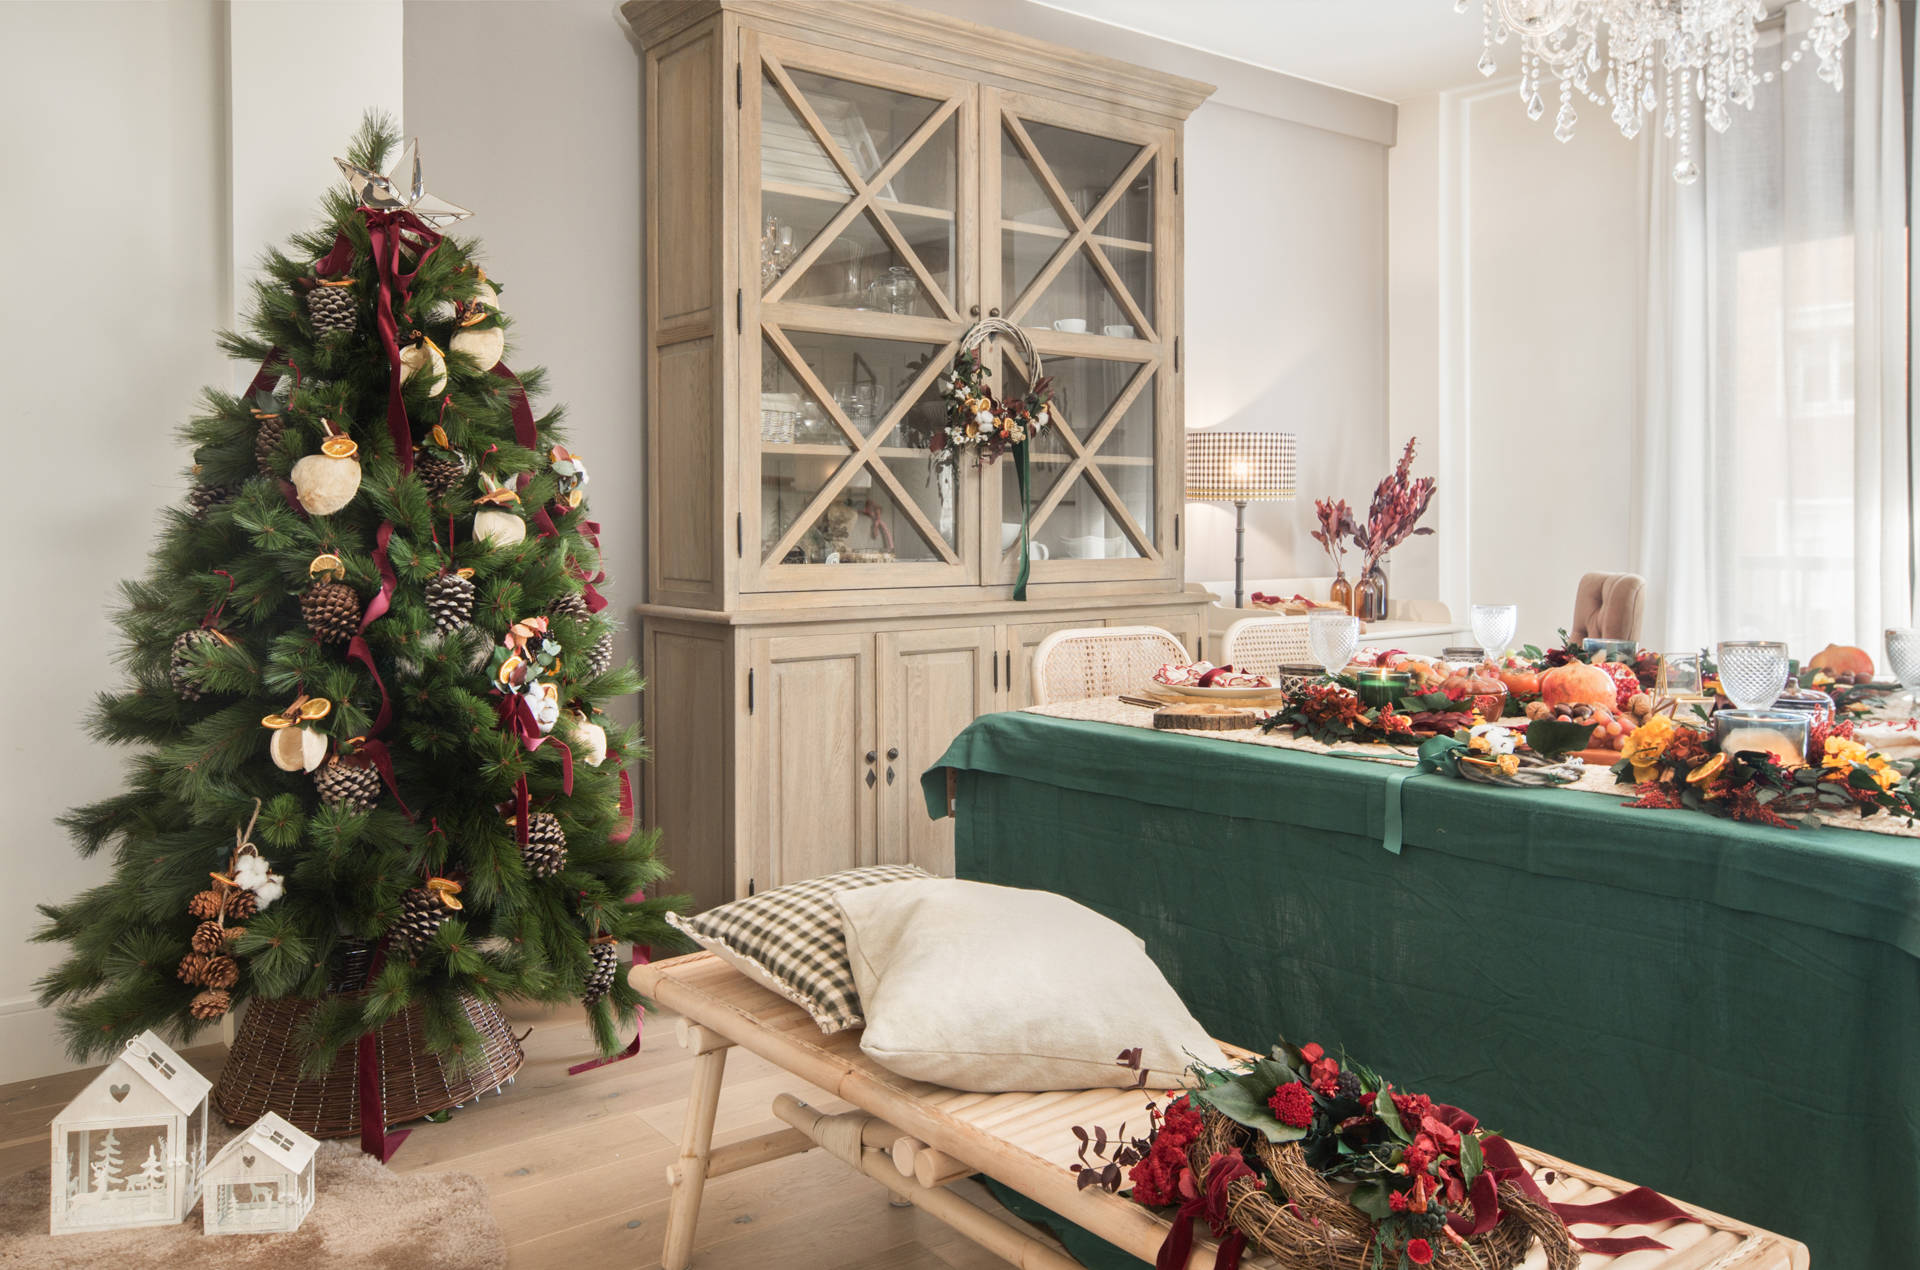 Comedor navideño con árbol de Navidad decorado con piñas, gajos de naranja, estrella plateada y lazo rojo. Bajo el árbol, textil de cordero y casitas blancas de adorno. 